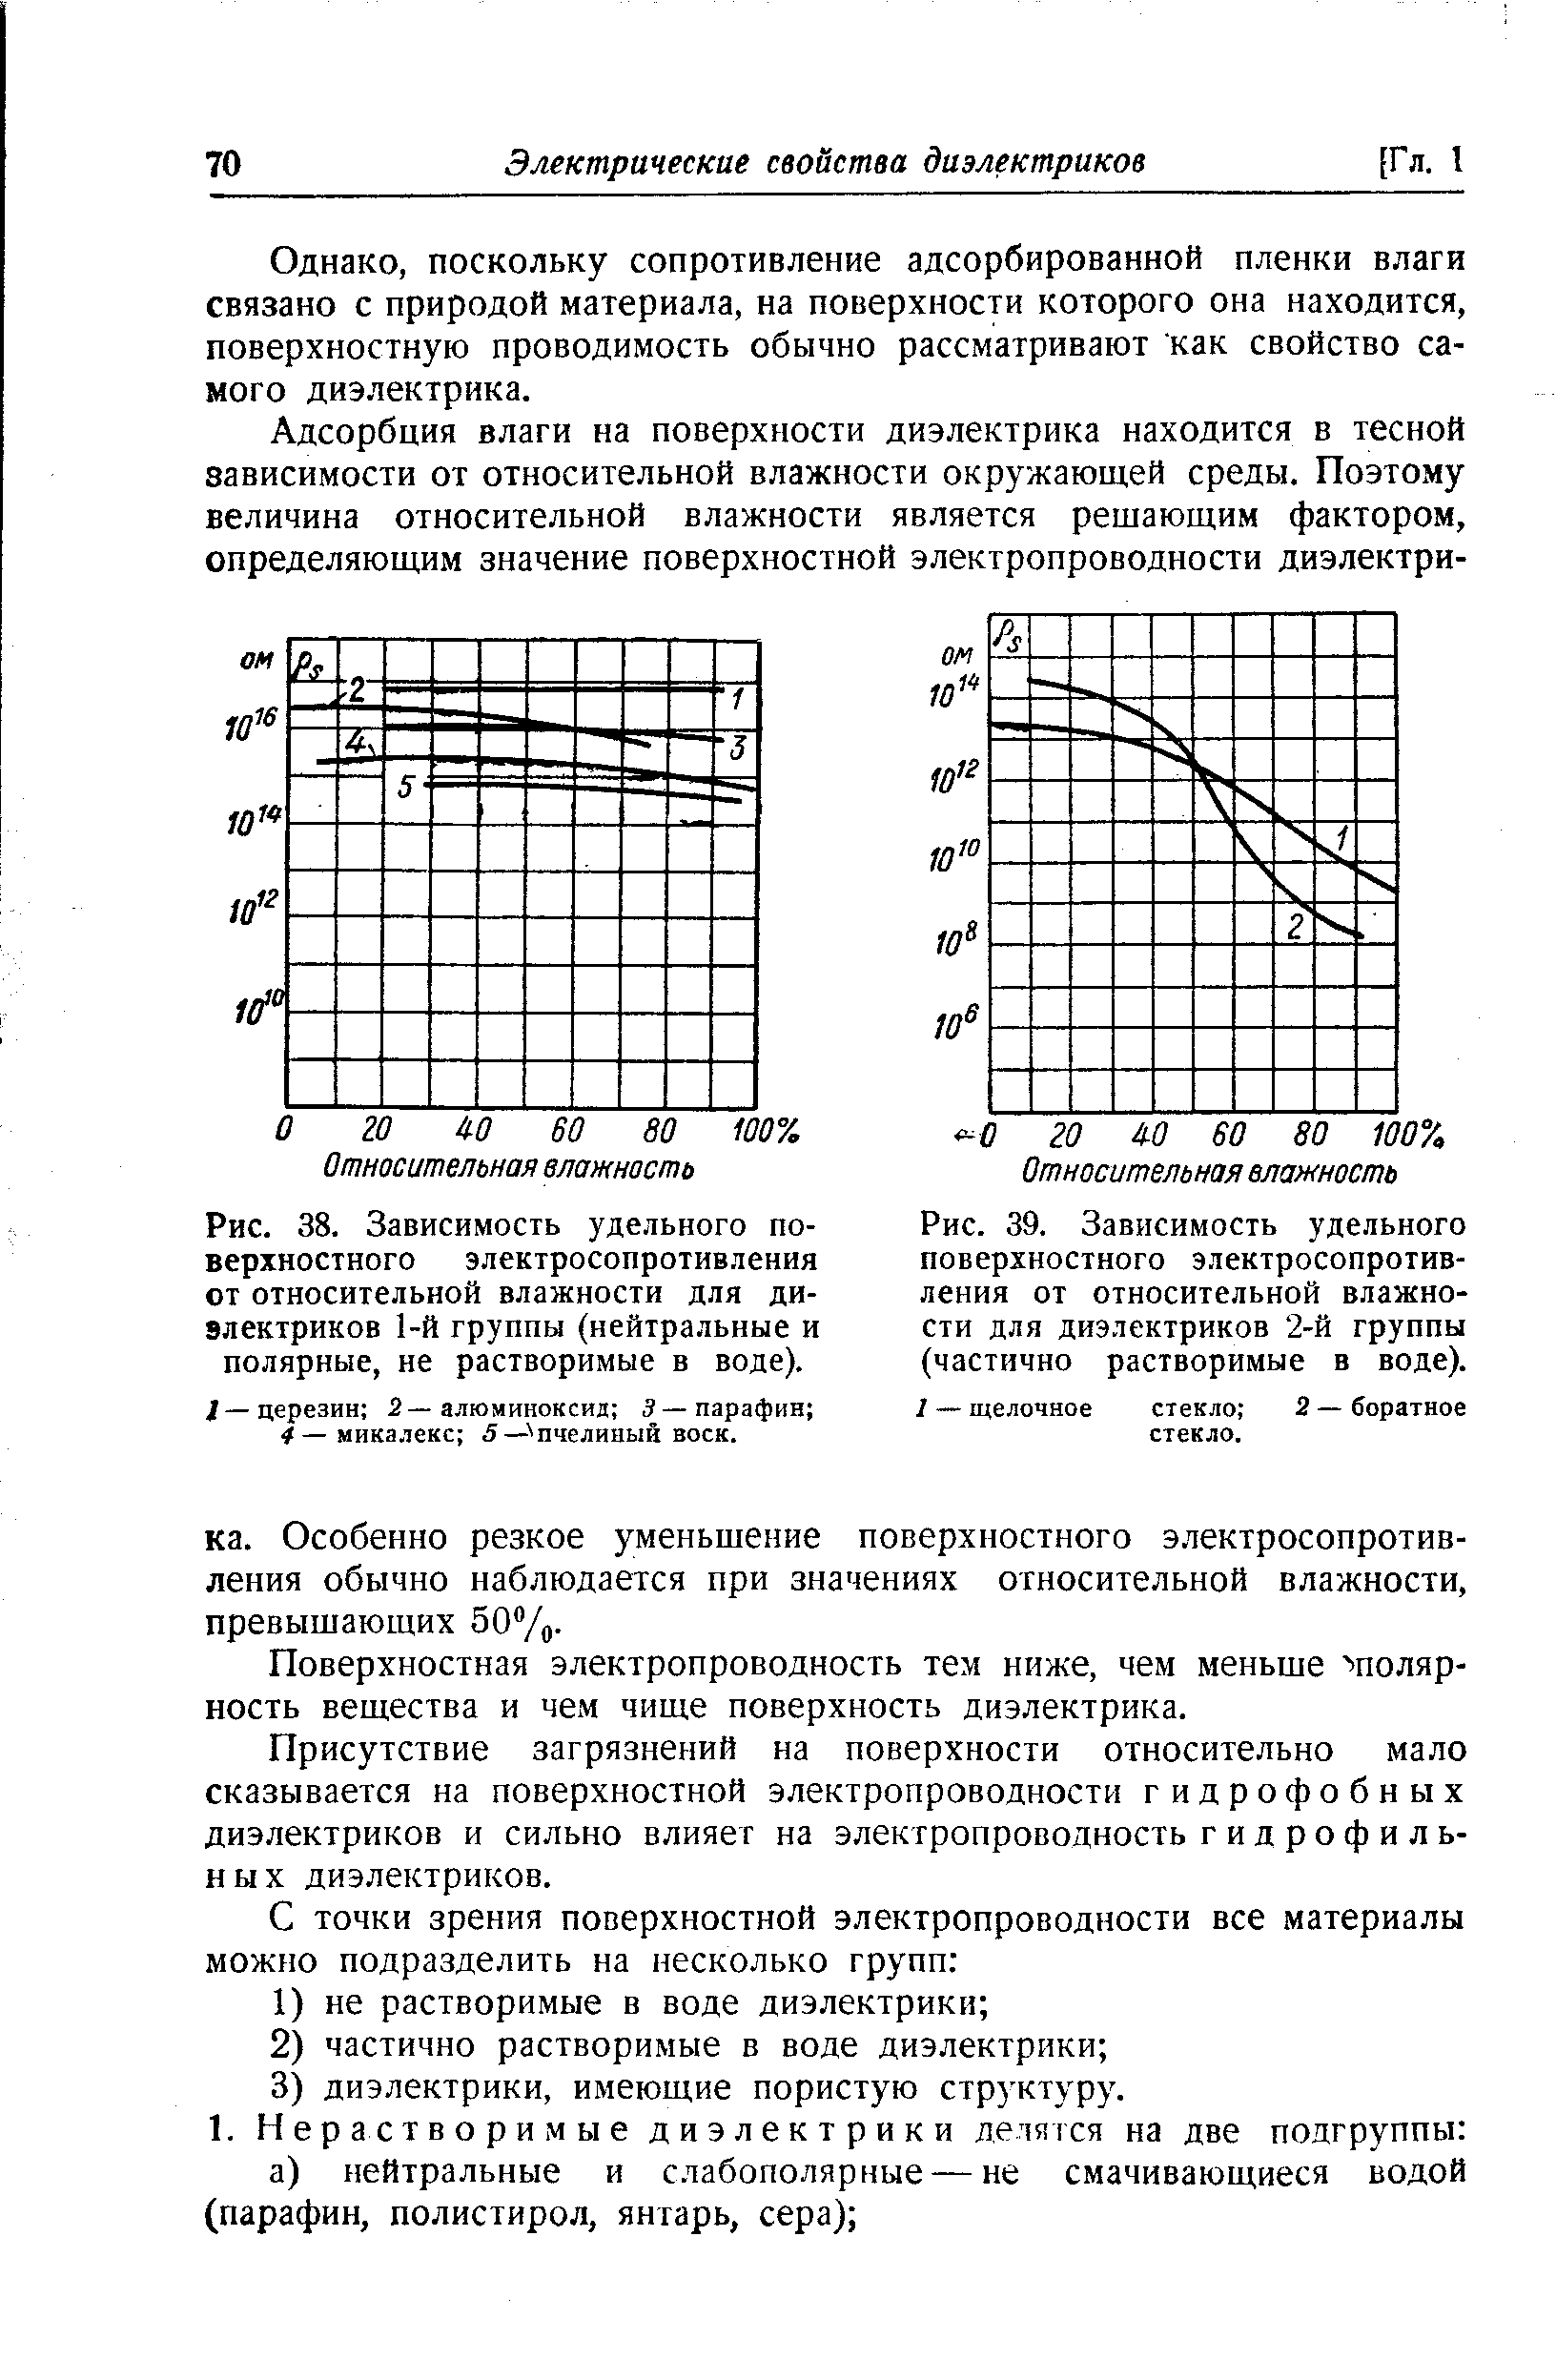 Рис. 38. Зависимость удельного поверхностного электросопротивления от <a href="/info/716">относительной влажности</a> для диэлектриков 1-й группы (нейтральные и полярные, не растворимые в воде).
